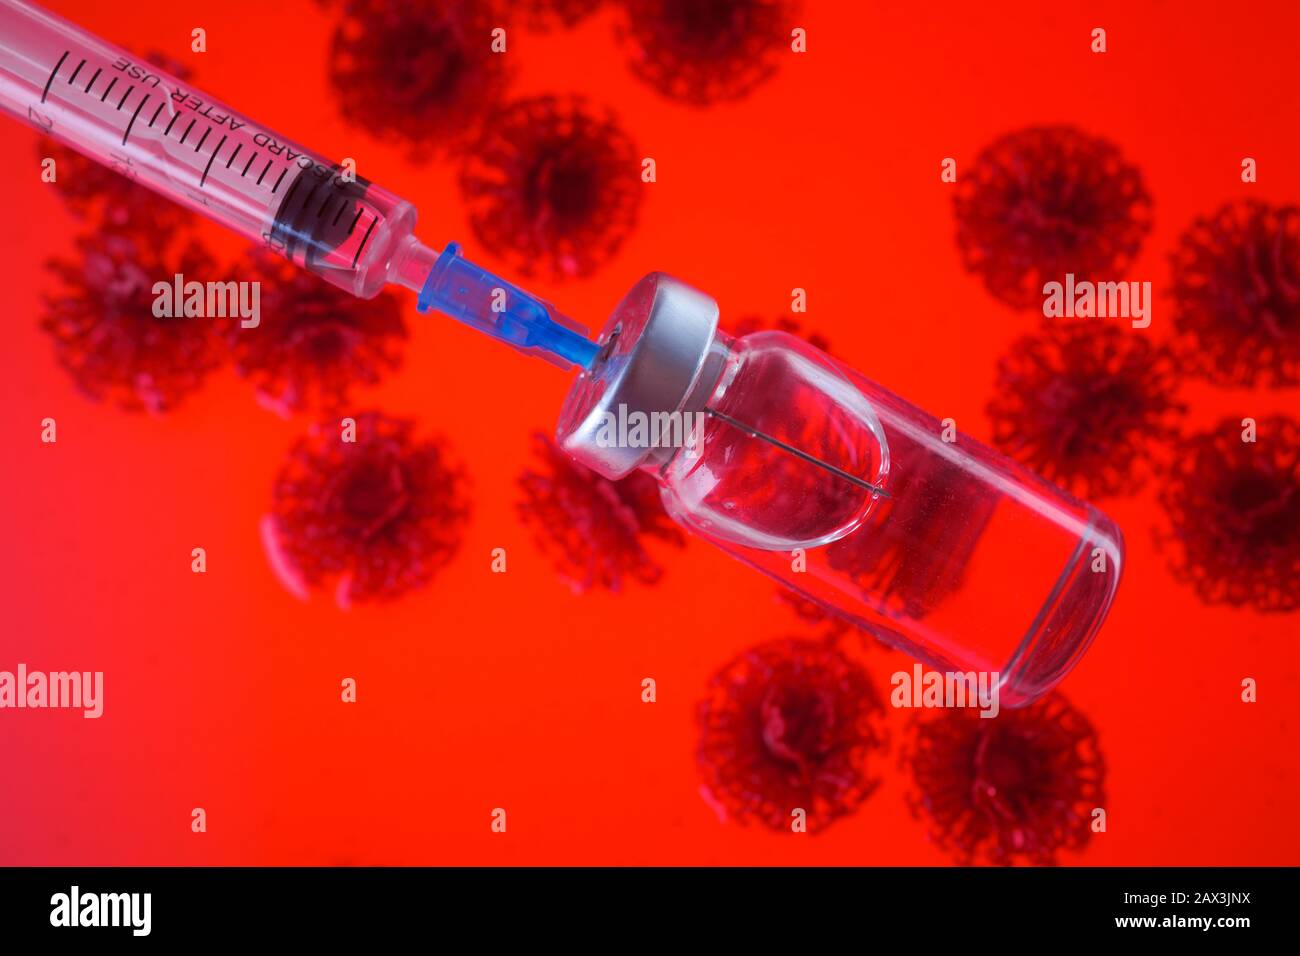 Concept de vaccin contre le virus Corona avec seringue et antécédents de virus. Concept vaccinal de lutte contre le coronavirus. Banque D'Images